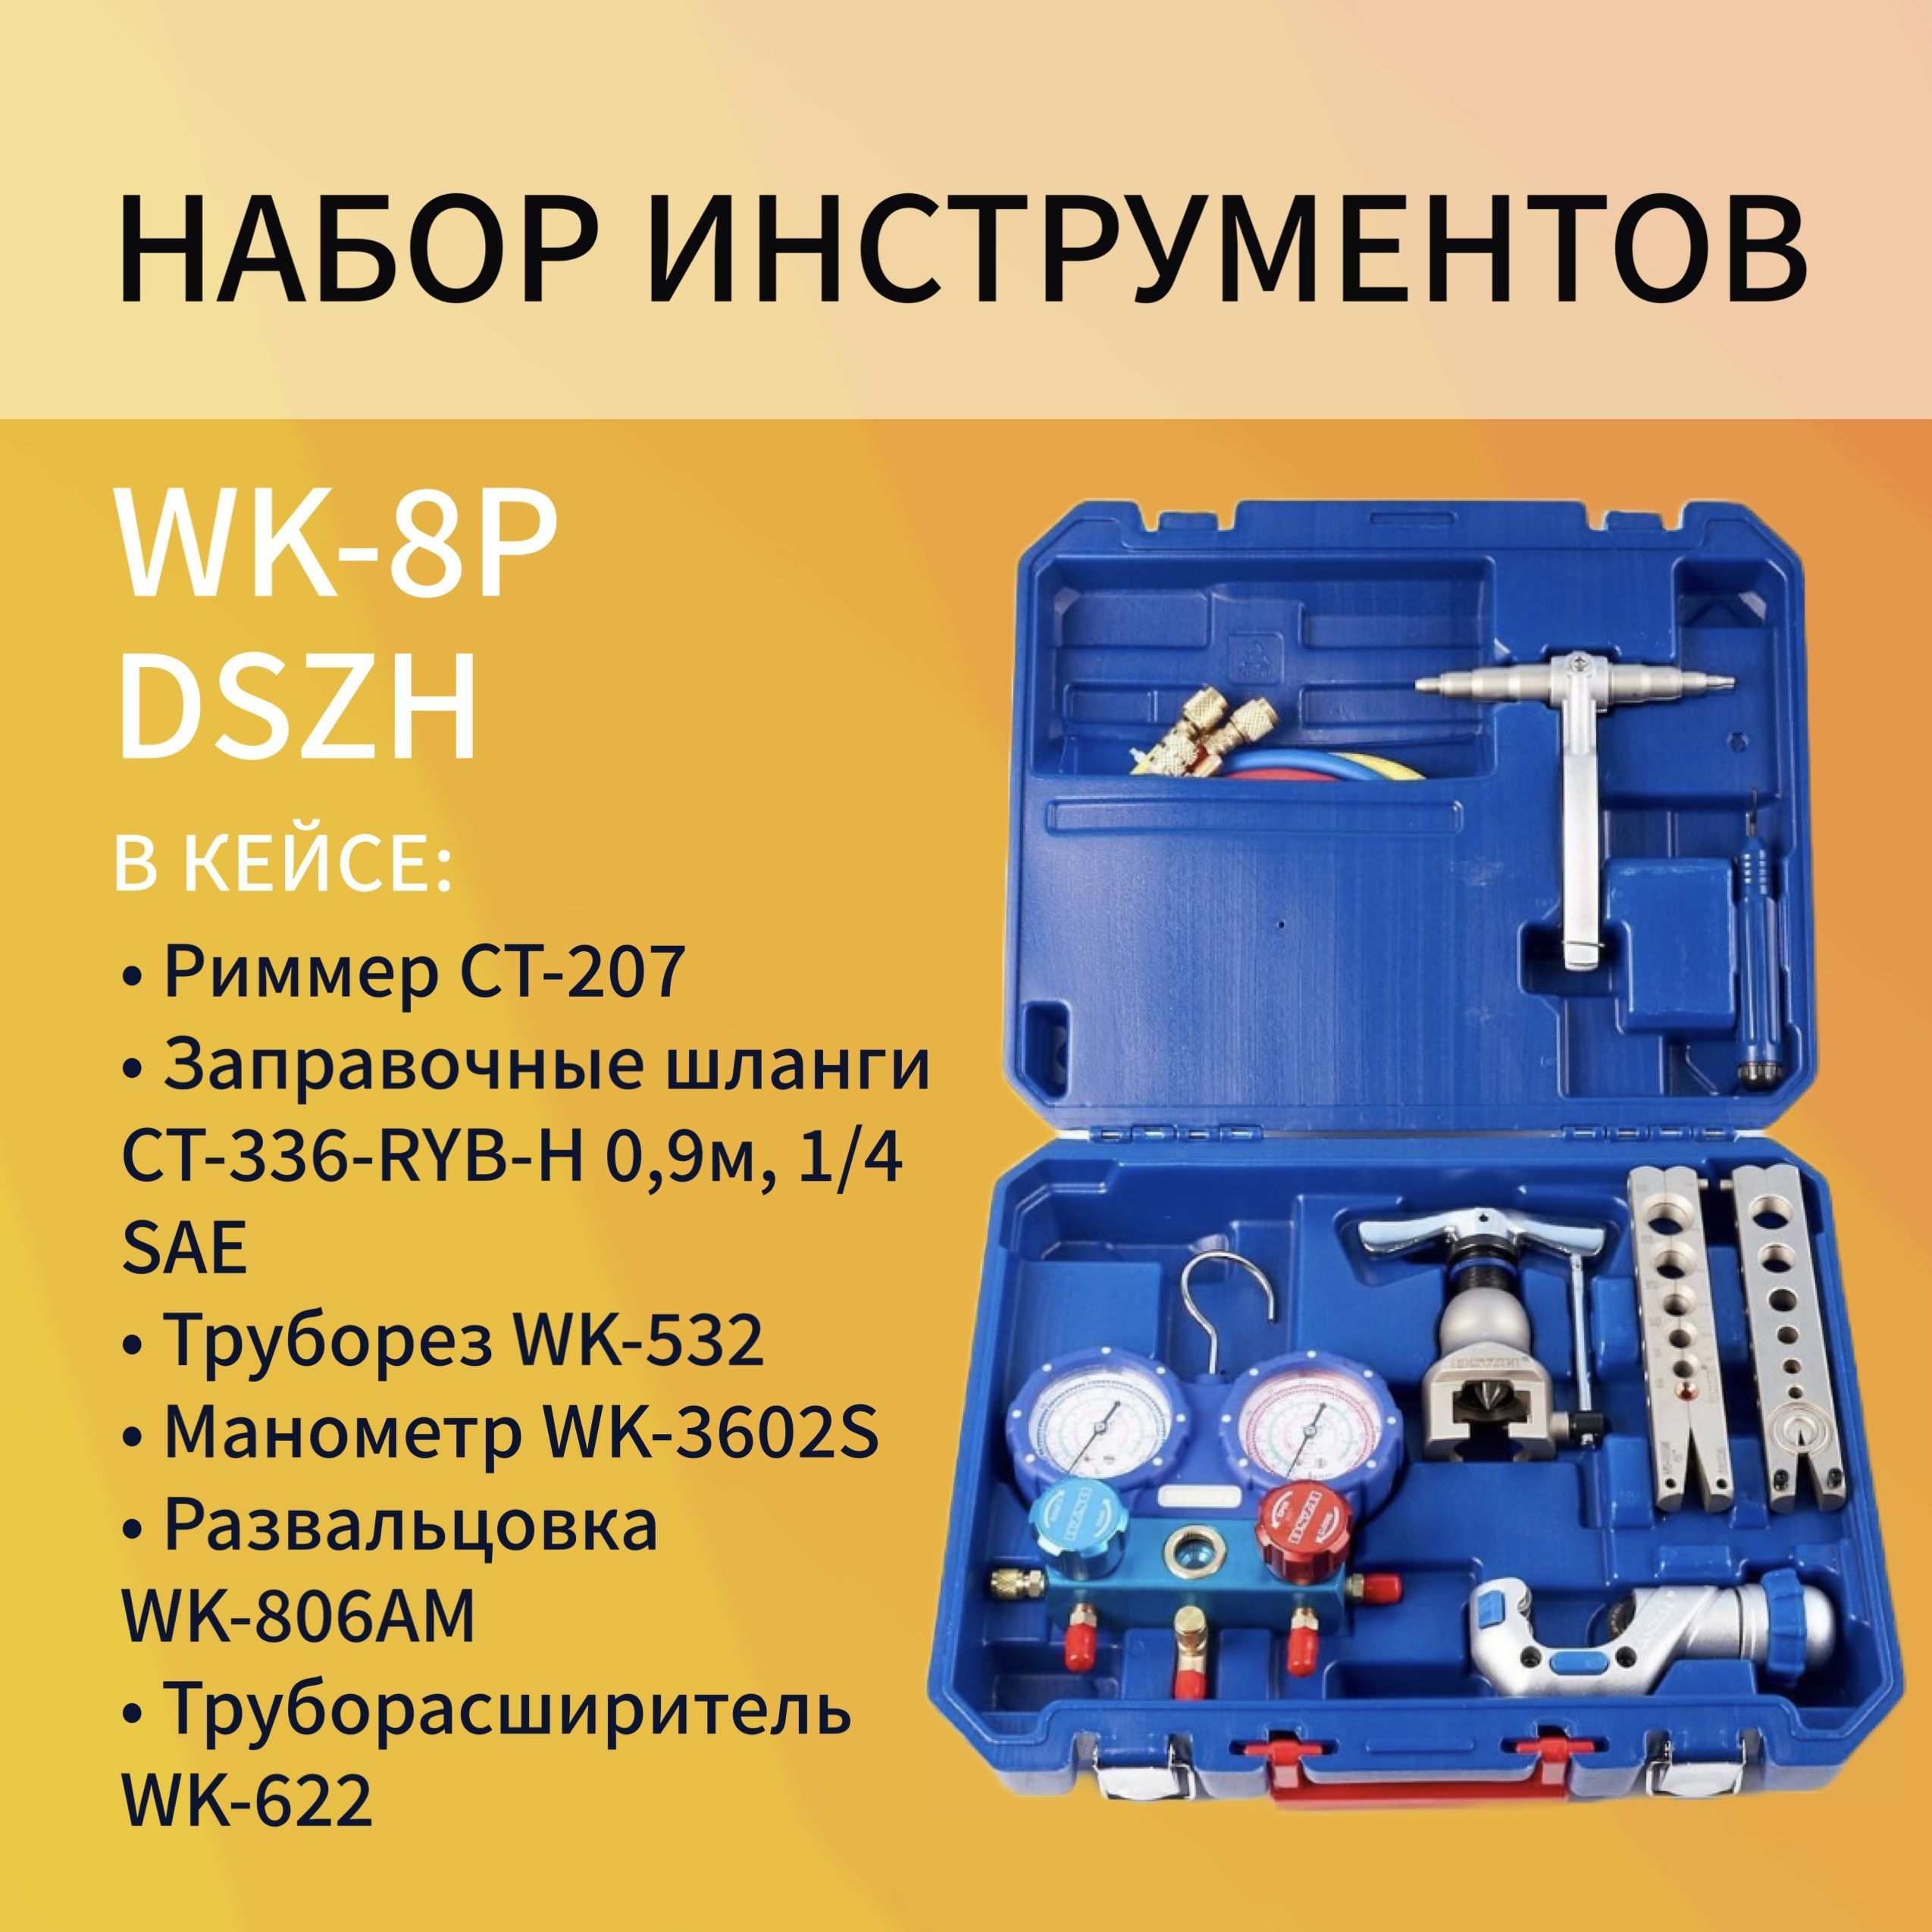 фото Набор инструментов dszh wk-8p в пластиковом кейсе